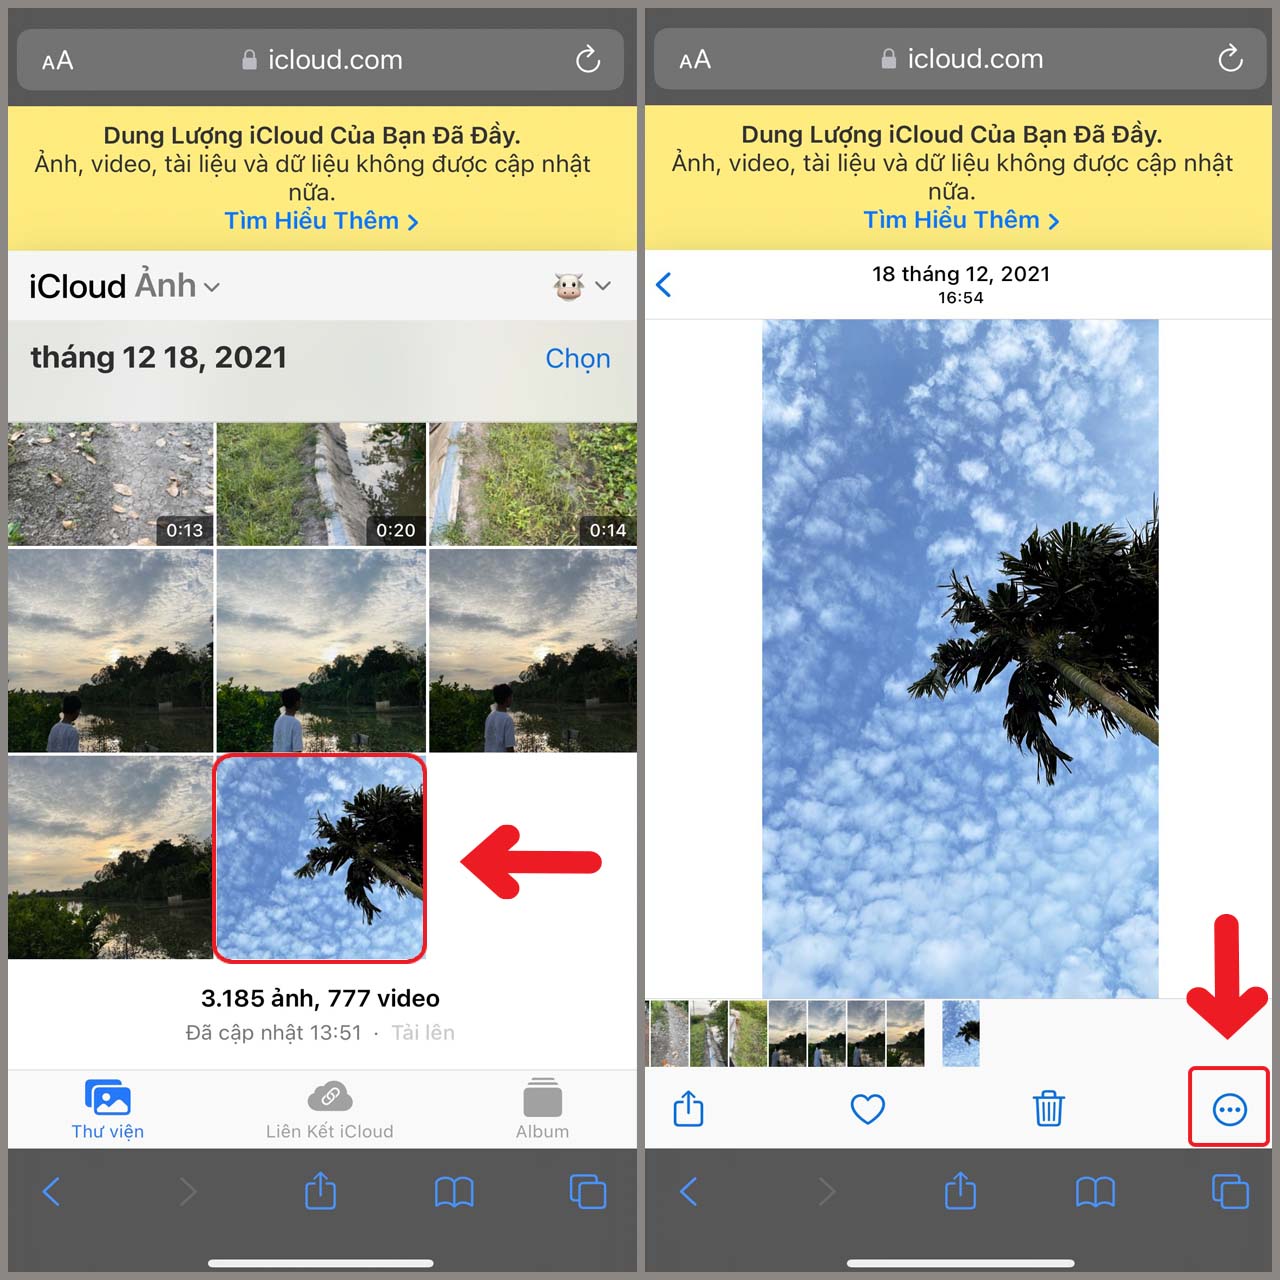 Tải ảnh từ iCloud về iPhone Lưu trữ hình ảnh trên iCloud là lựa chọn của rất nhiều người dùng iPhone. Hãy tải ảnh từ iCloud về iPhone của mình và trải nghiệm cách thức hiển thị ảnh tuyệt vời nhất. Hình ảnh liên quan sẽ giúp bạn làm điều đó một cách dễ dàng hơn.